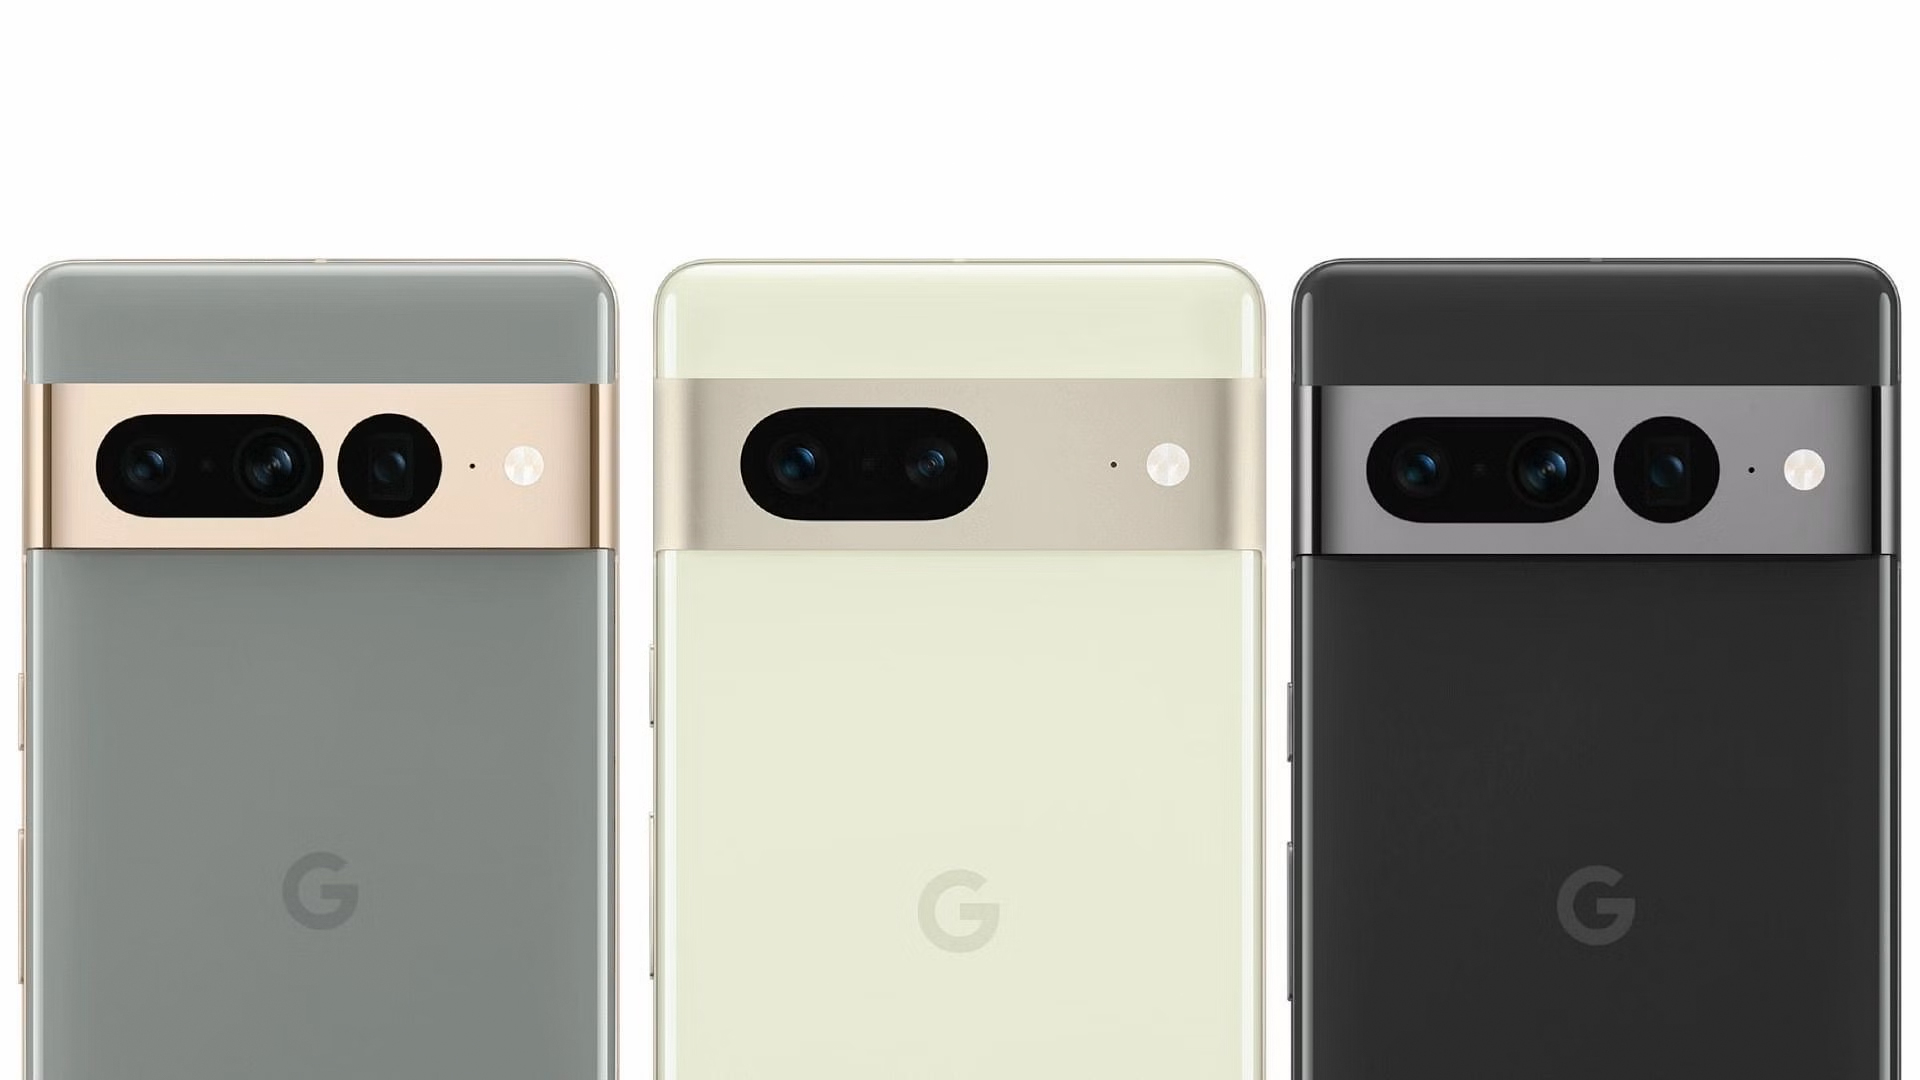 گوگل پیکسل 7 پرو در سه رنگ خاکستری، سبز کم رنگ و دودی